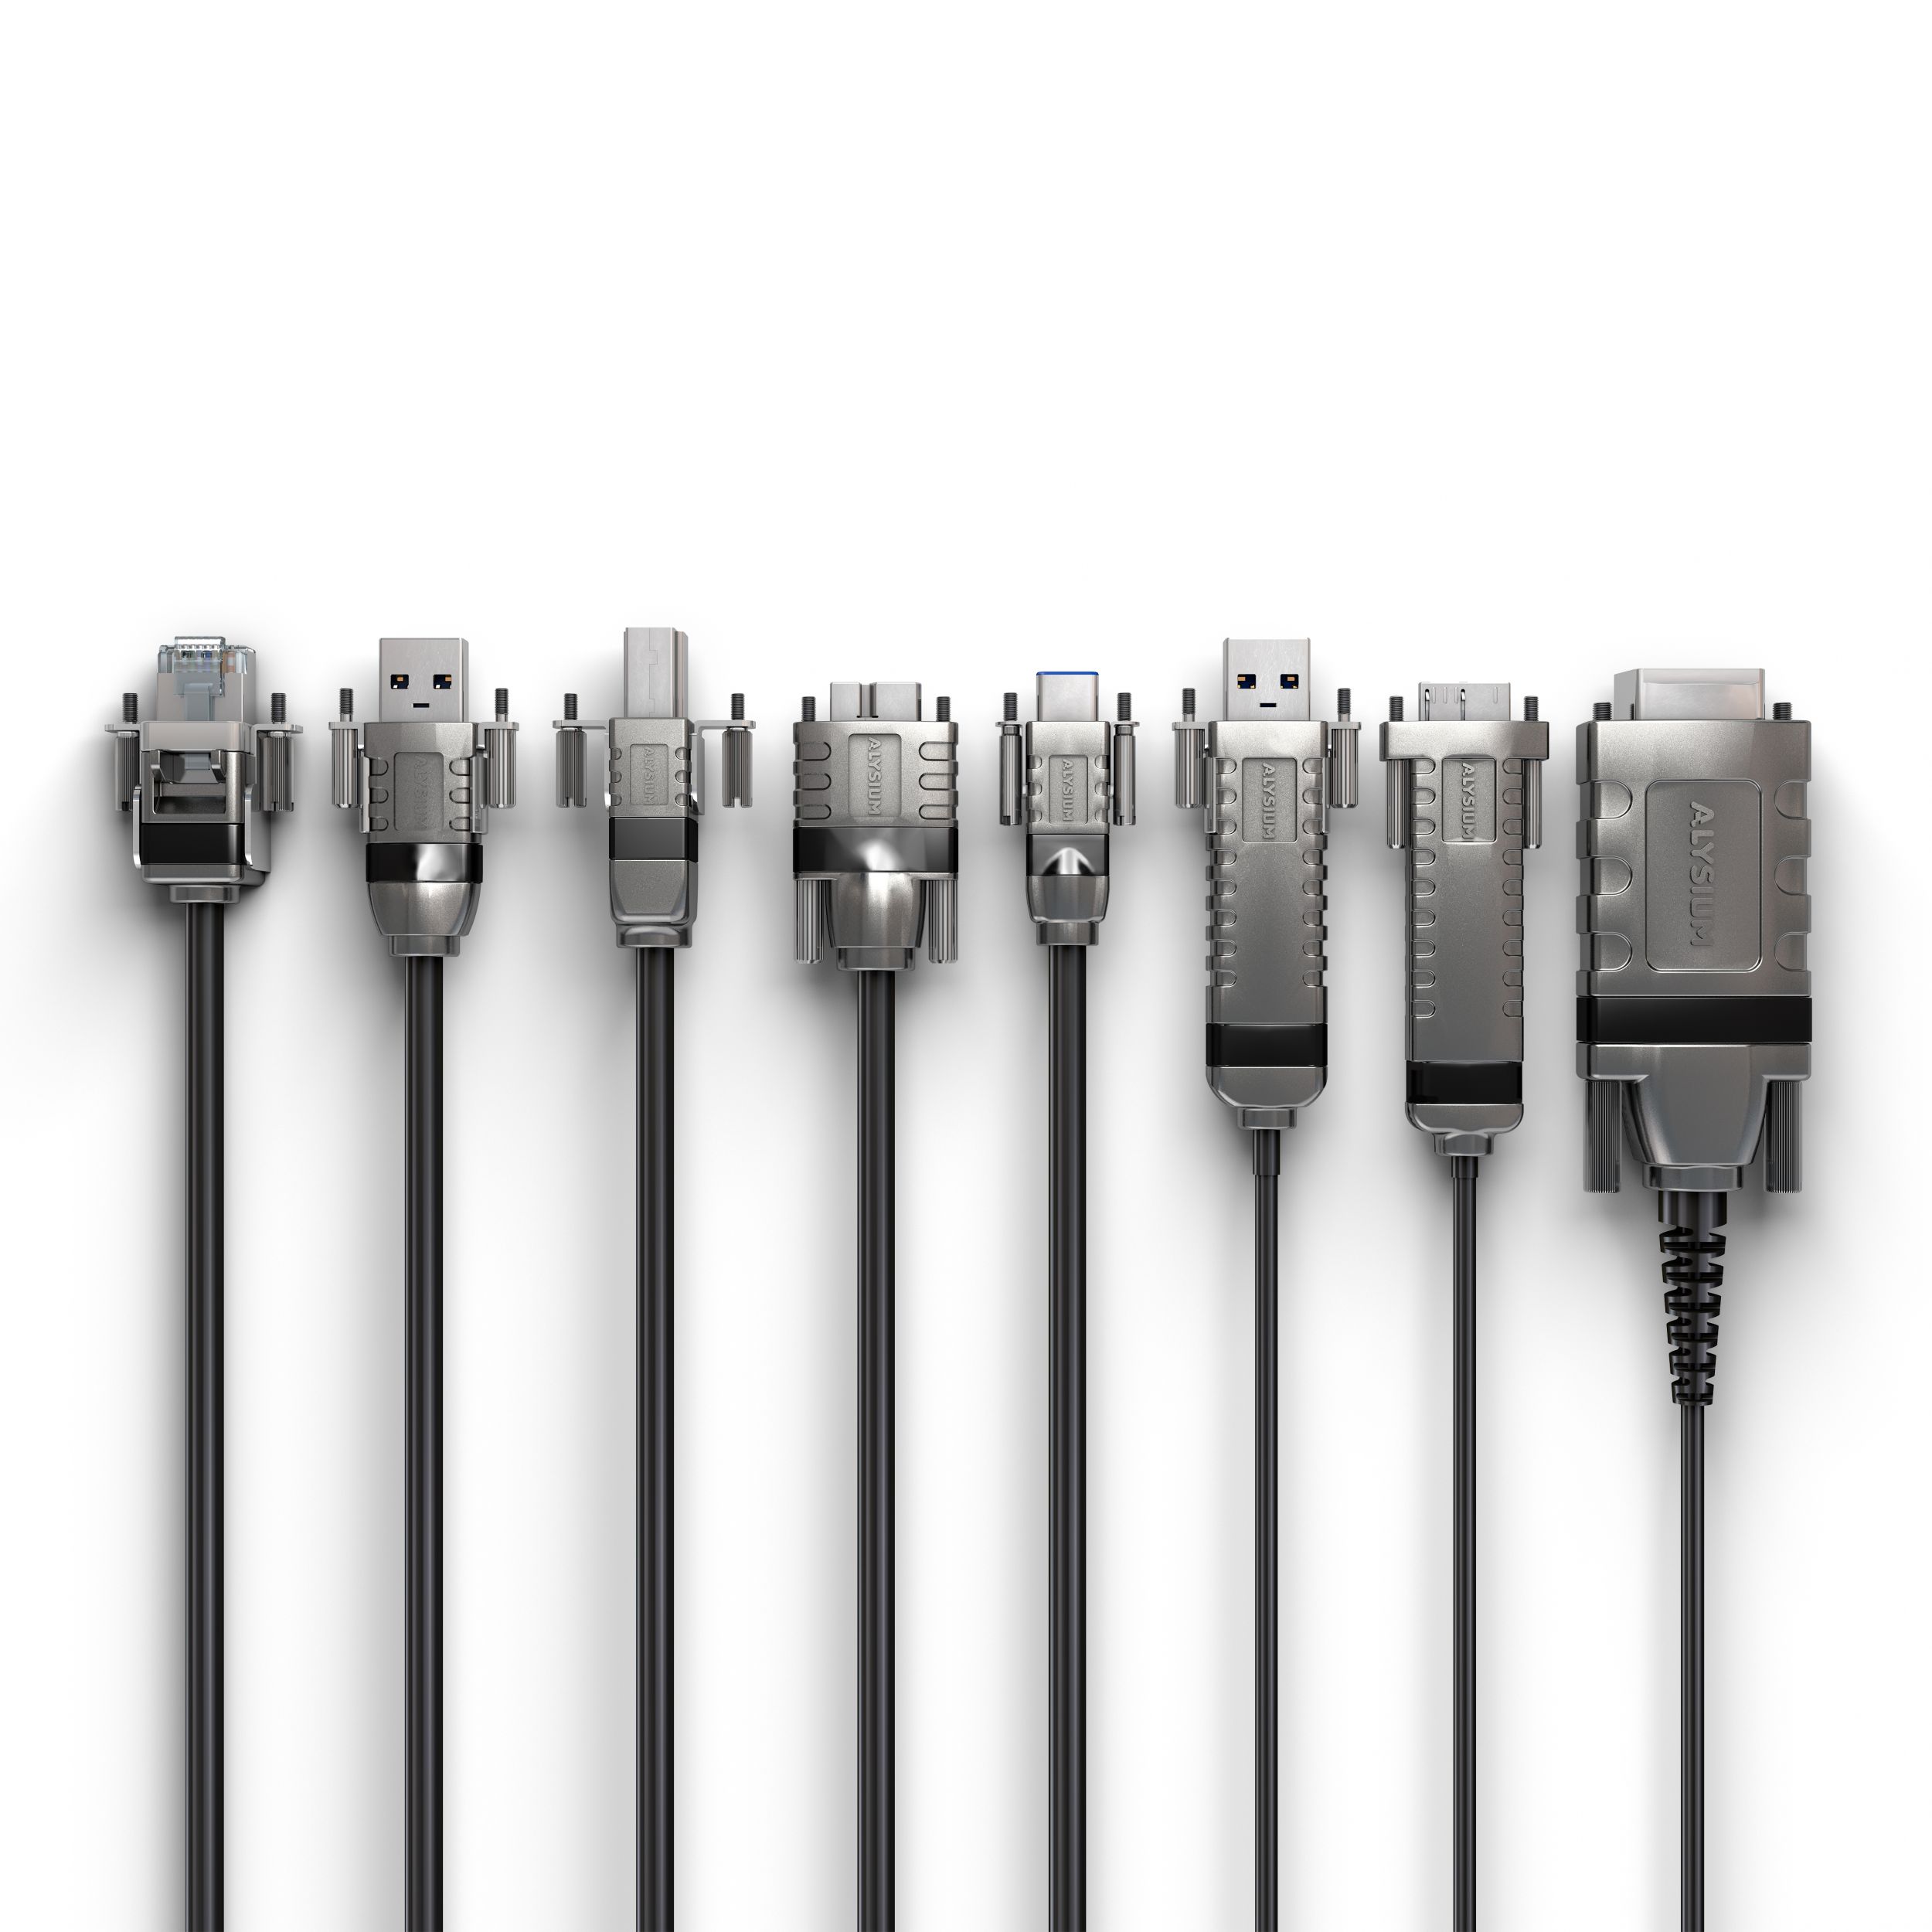  Für Interfaces, wie USB 3.0/3.1, Ethernet über RJ45, CameraLink (HS) oder CoaXpress, ergeben sich unterschiedliche maximale Kabellängen, die von verschiedenen Faktoren abhängen. (Bild: Alysium-Tech GmbH)